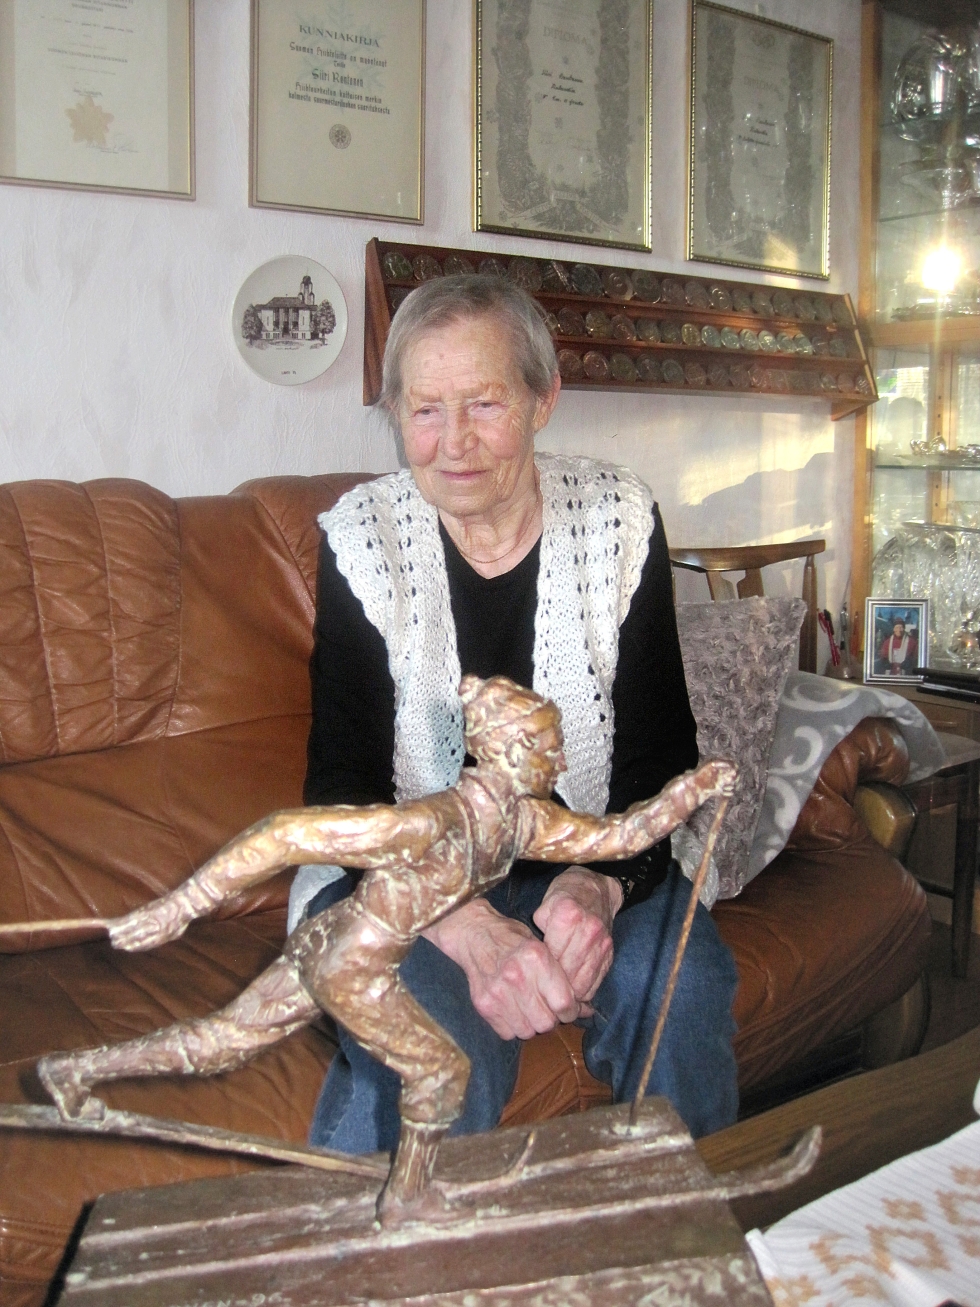 Tänään lauantaina 89 vuotta täyttävä Siiri Rantanen muutti 26-vuotiaana Pohjois-Karjalasta Lahteen, jossa on asunut siitä lähtien. Rantasen laajasta palkintokokoelmasta löytyy myös pienoismalli hänestä tehdystä patsaasta. Patsasprojektista hän ei ollut kovinkaan innostunut.